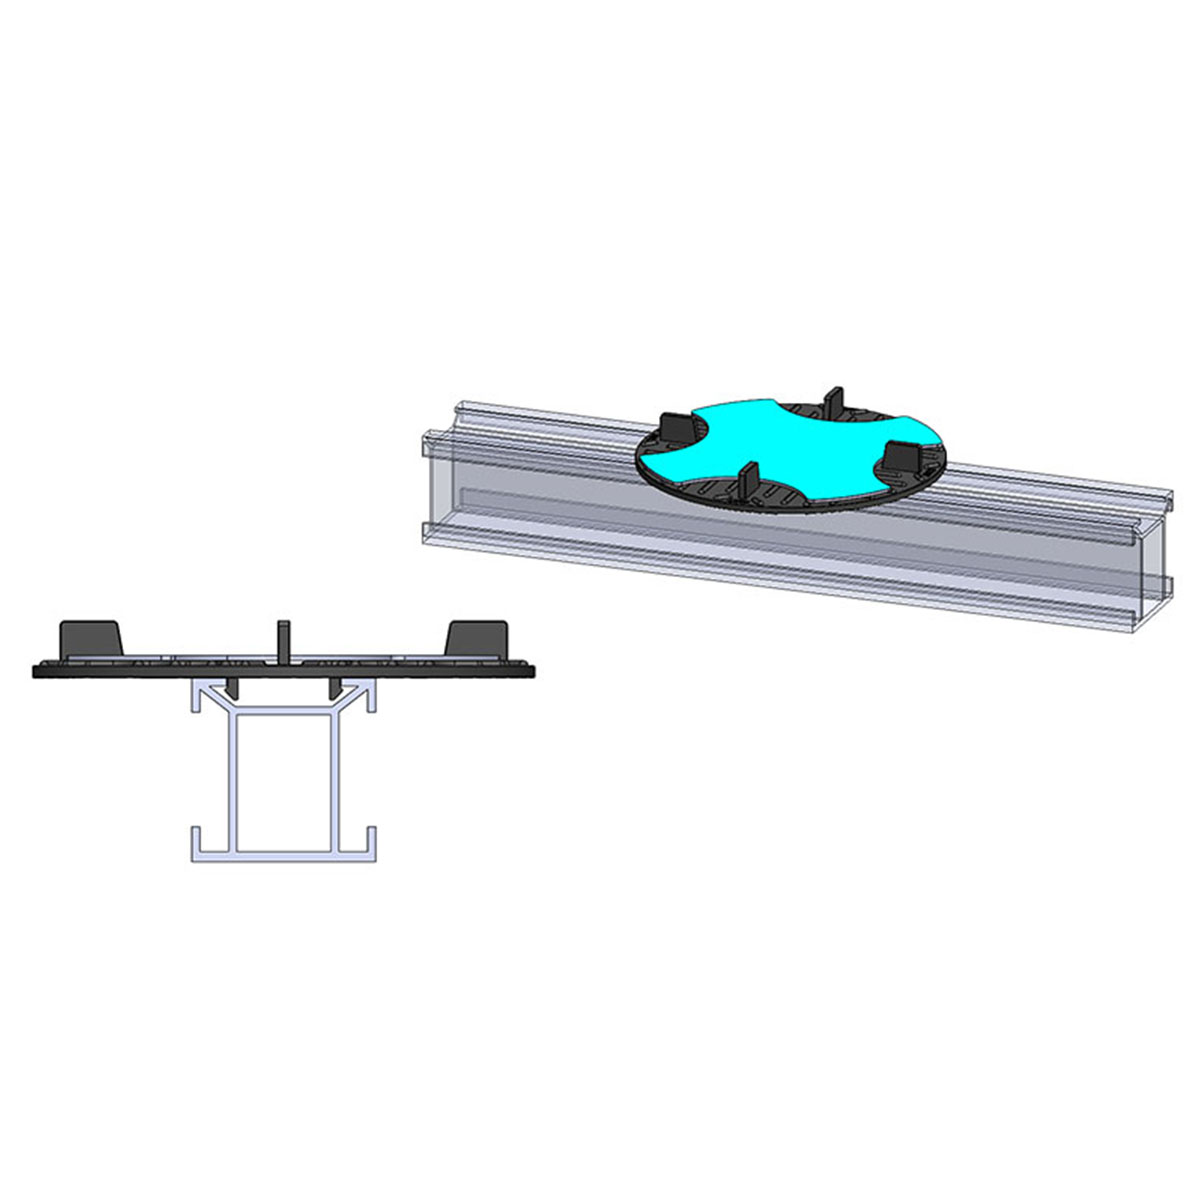 SOLIDOR Aufsatzmodul Click Top für QWICKBUILD Montageleisten inkl. Sticksol und mit 3 mm Fuge für Terrassenplatten